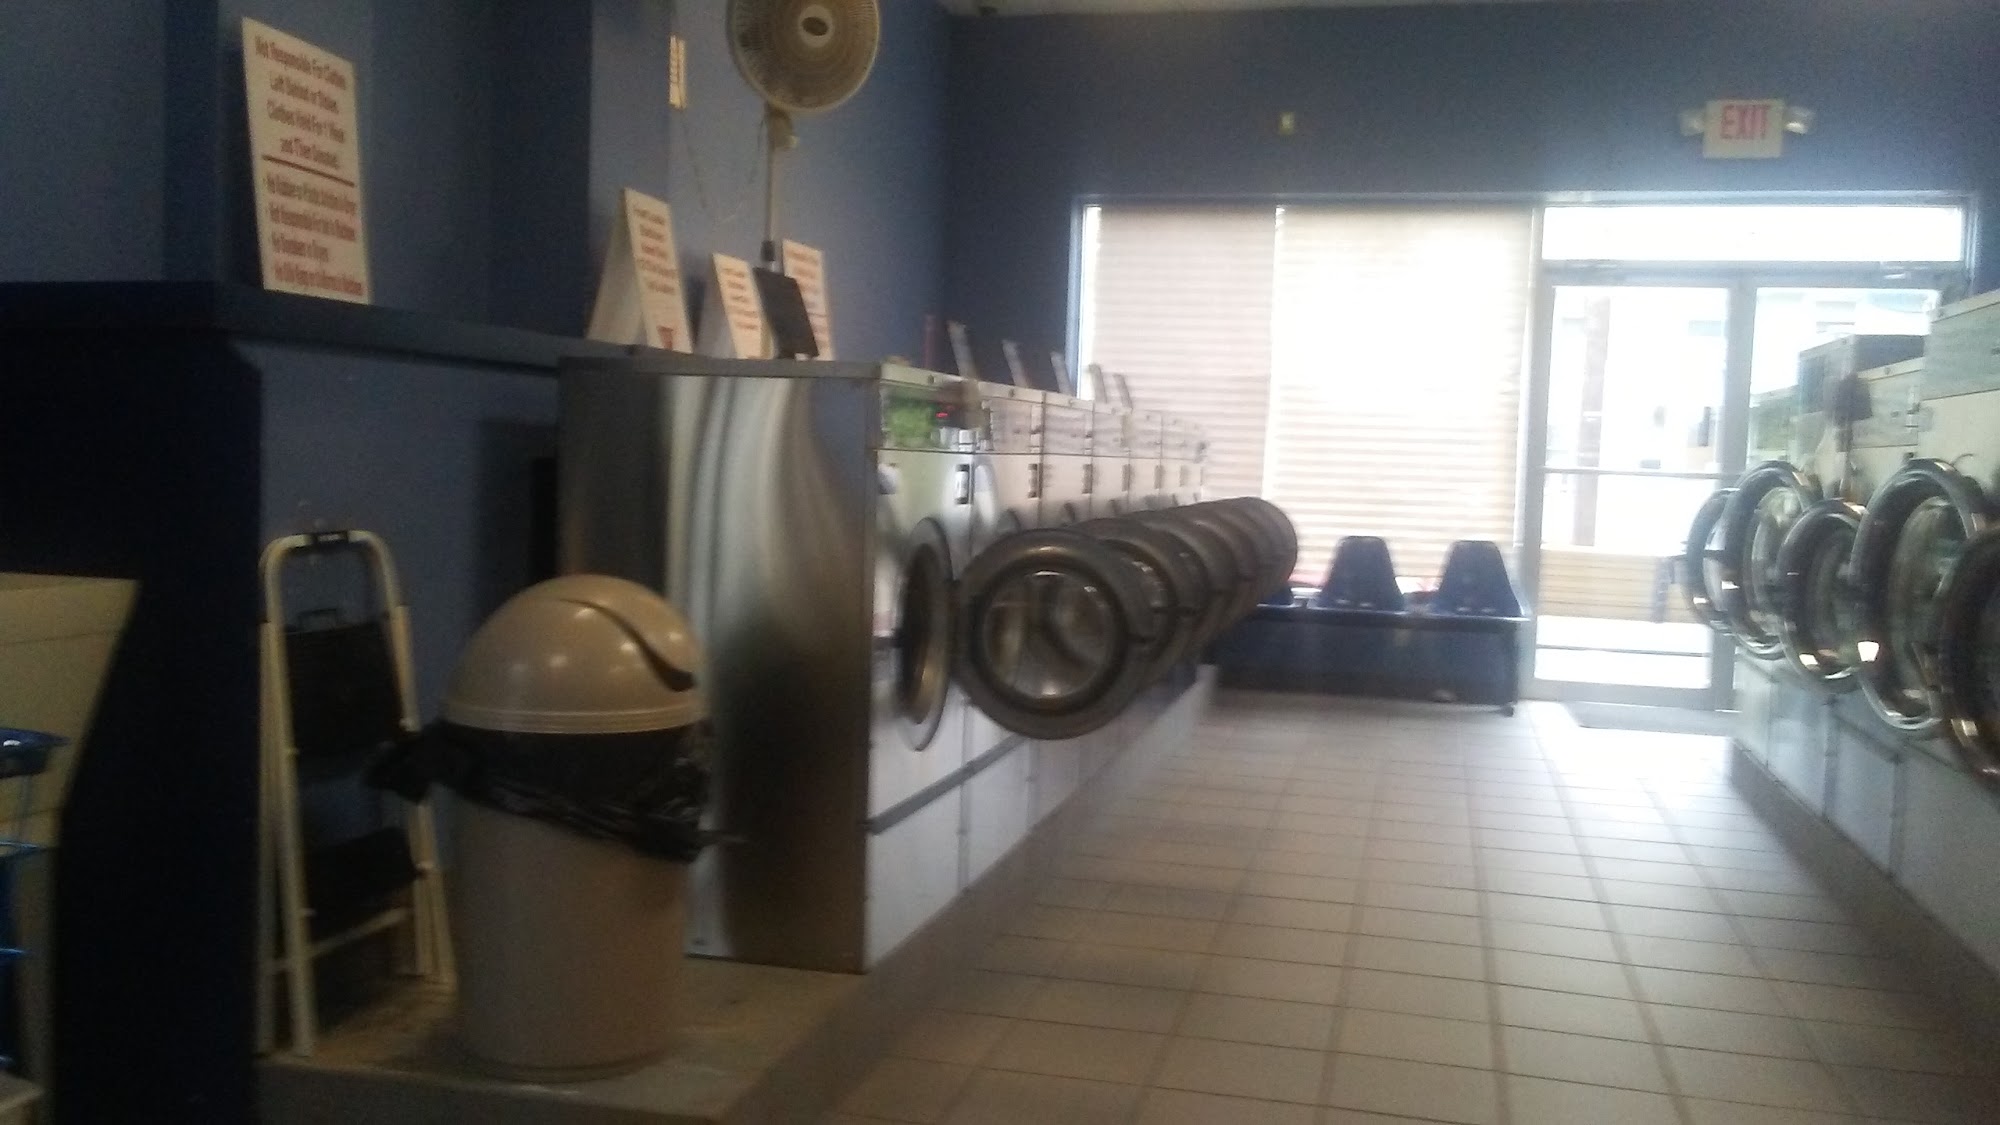 Triple Bubble Laundromat